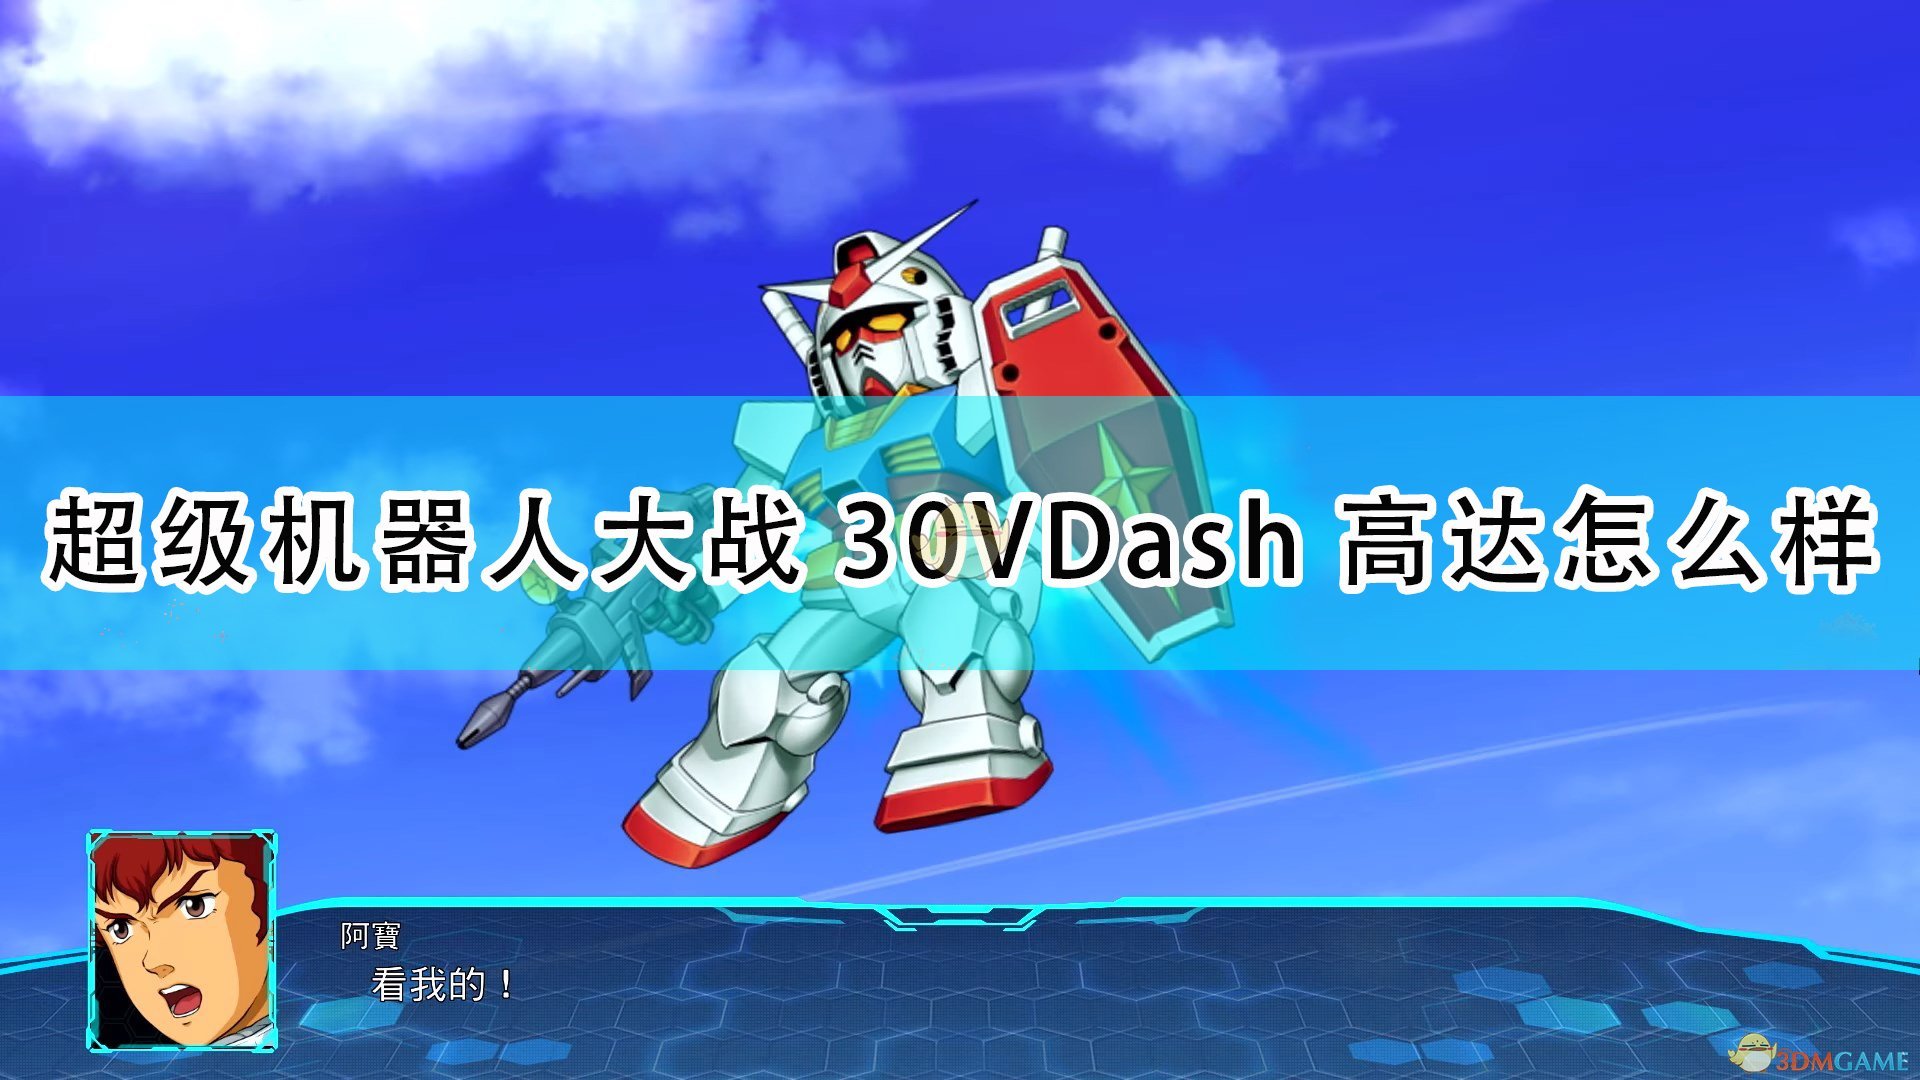 《超級機器人大戰30》V-Dash高達機體評價